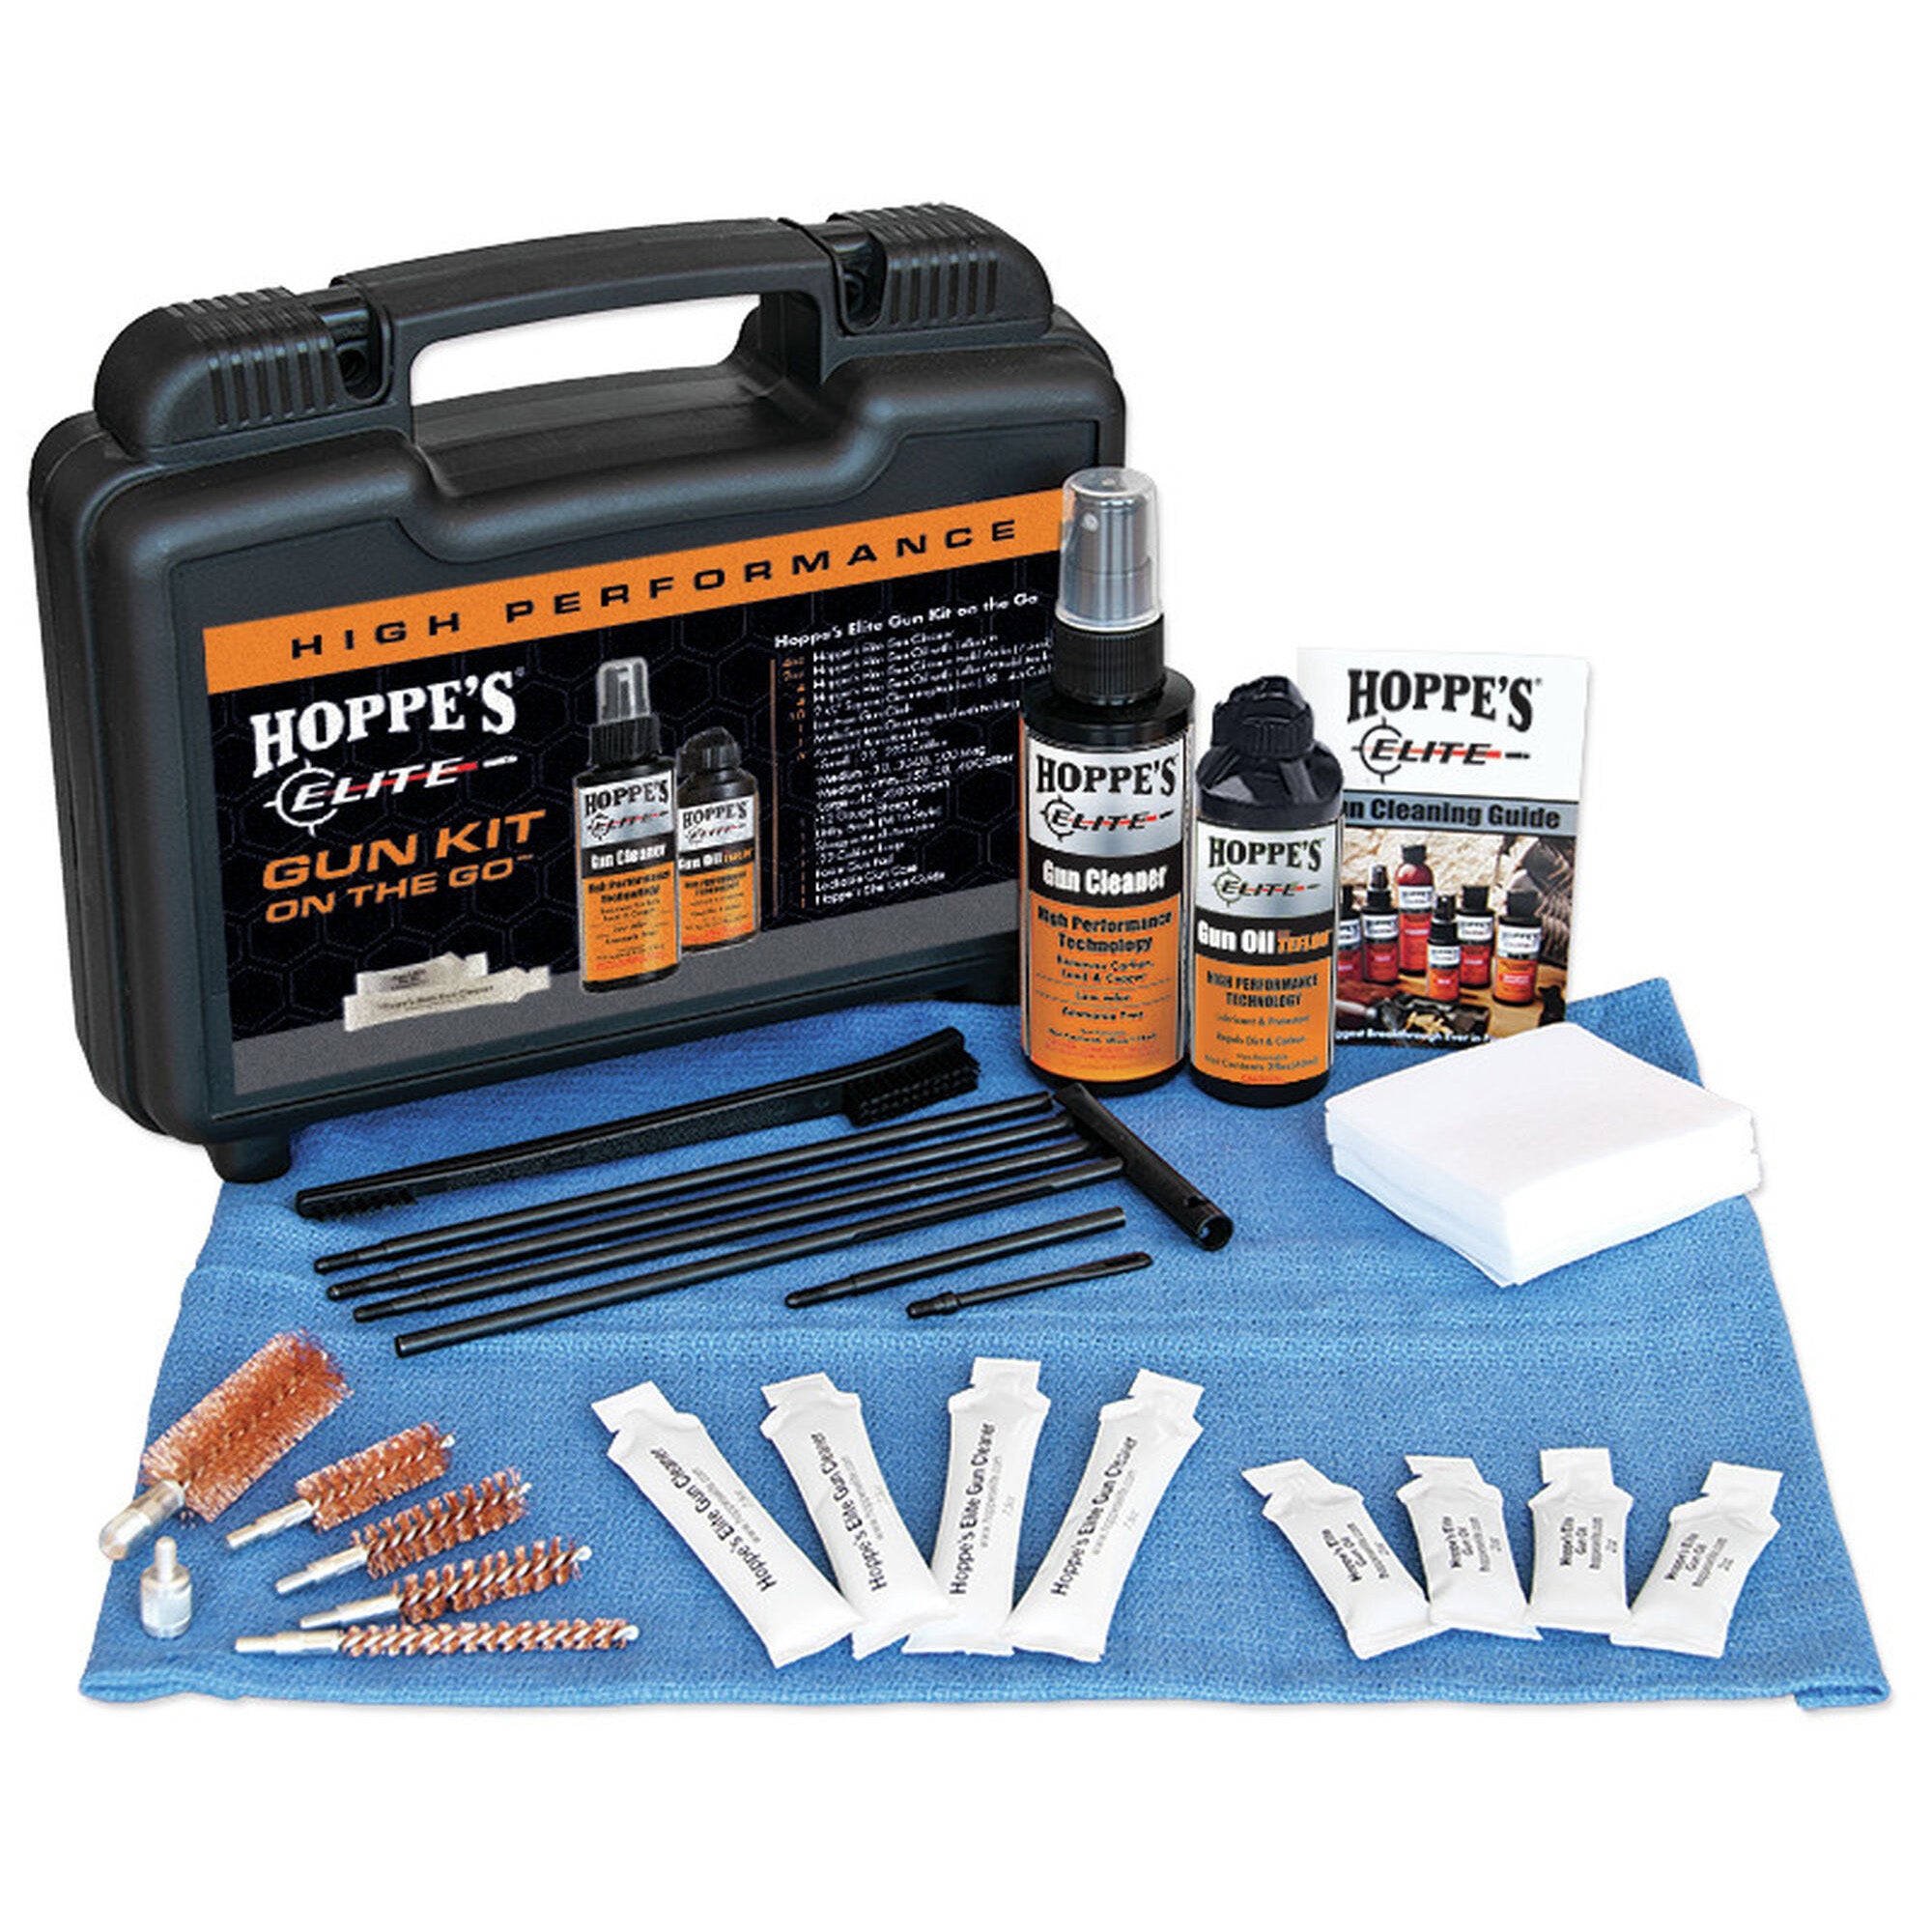 Hoppe's Elite Gun Care On-The-Go Cleaning Kit Hoppes